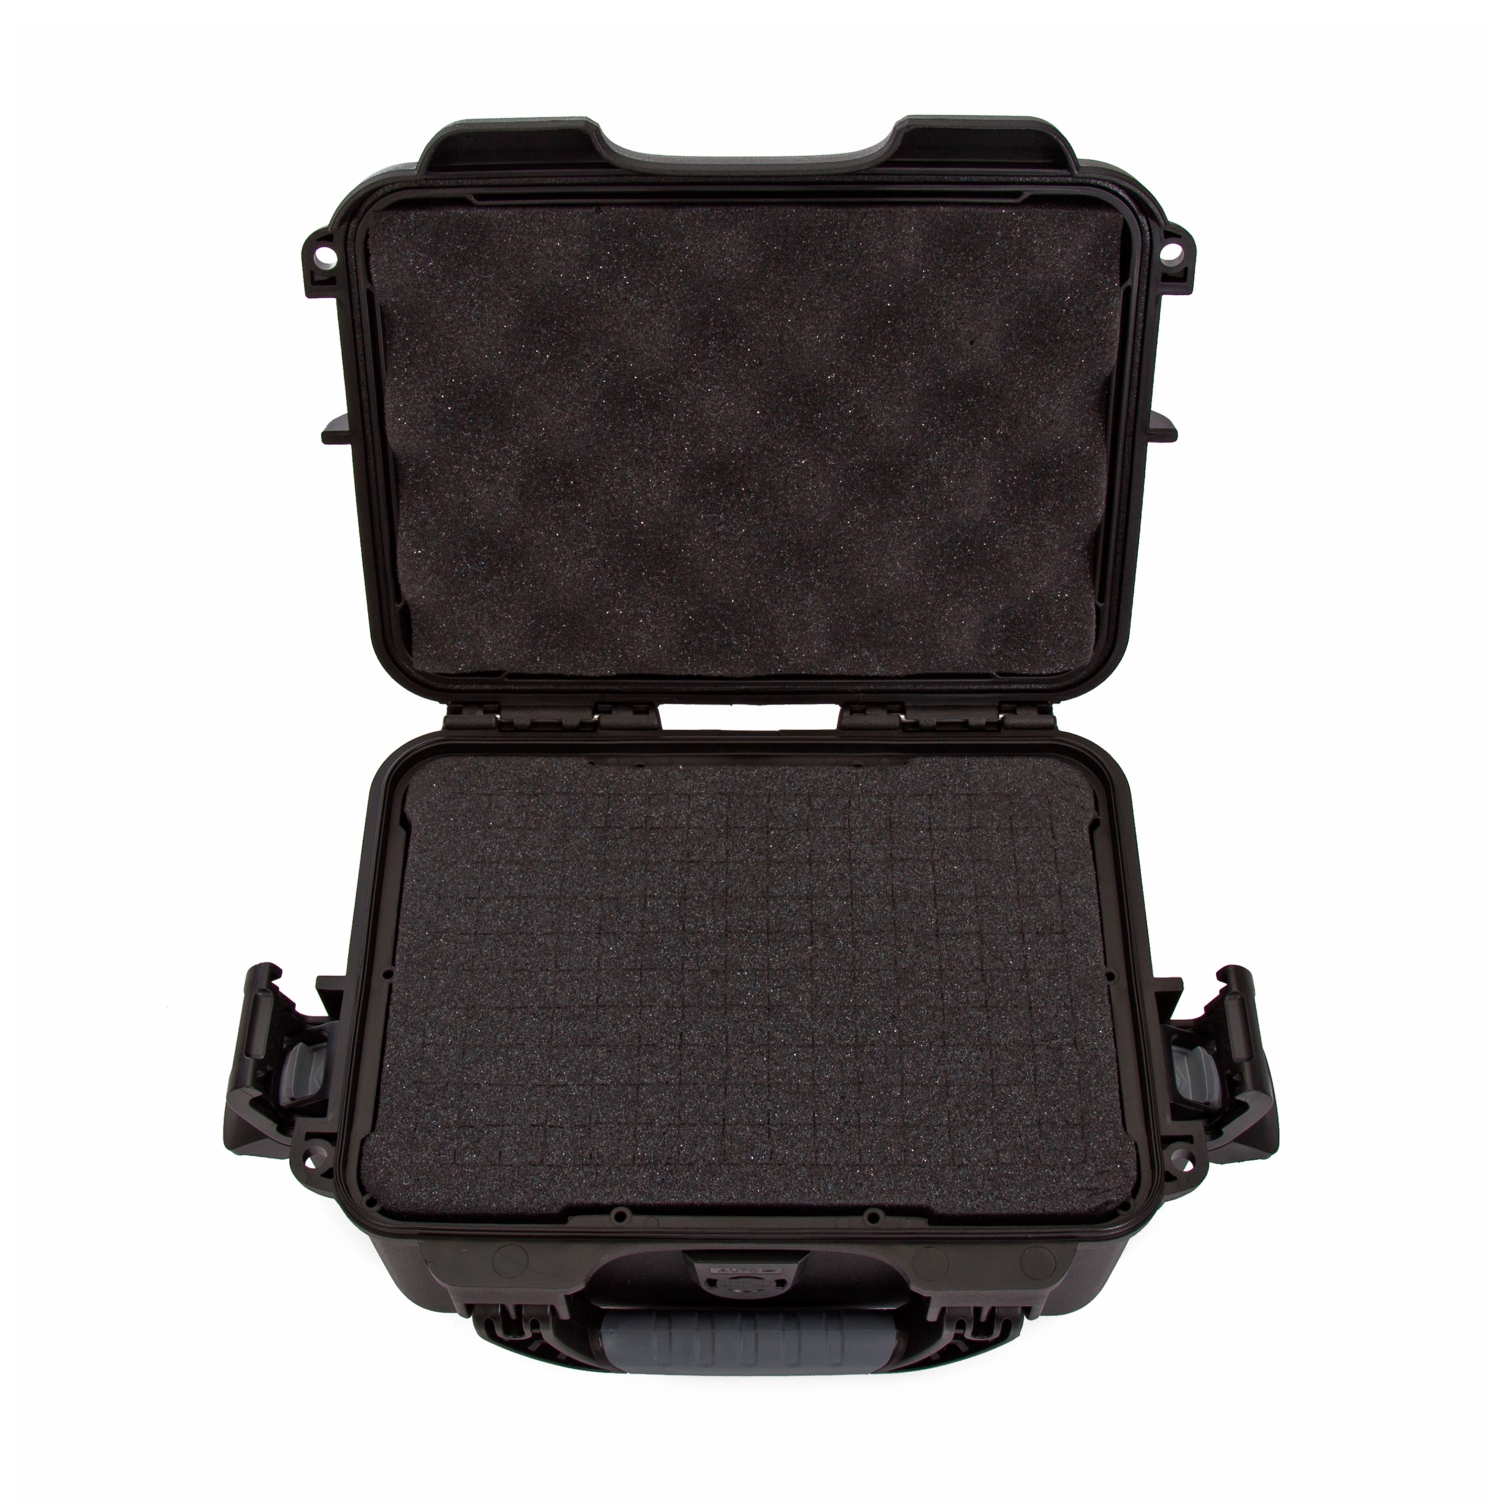 Black Nanuk 904 Waterproof Hard Case with Foam Insert 